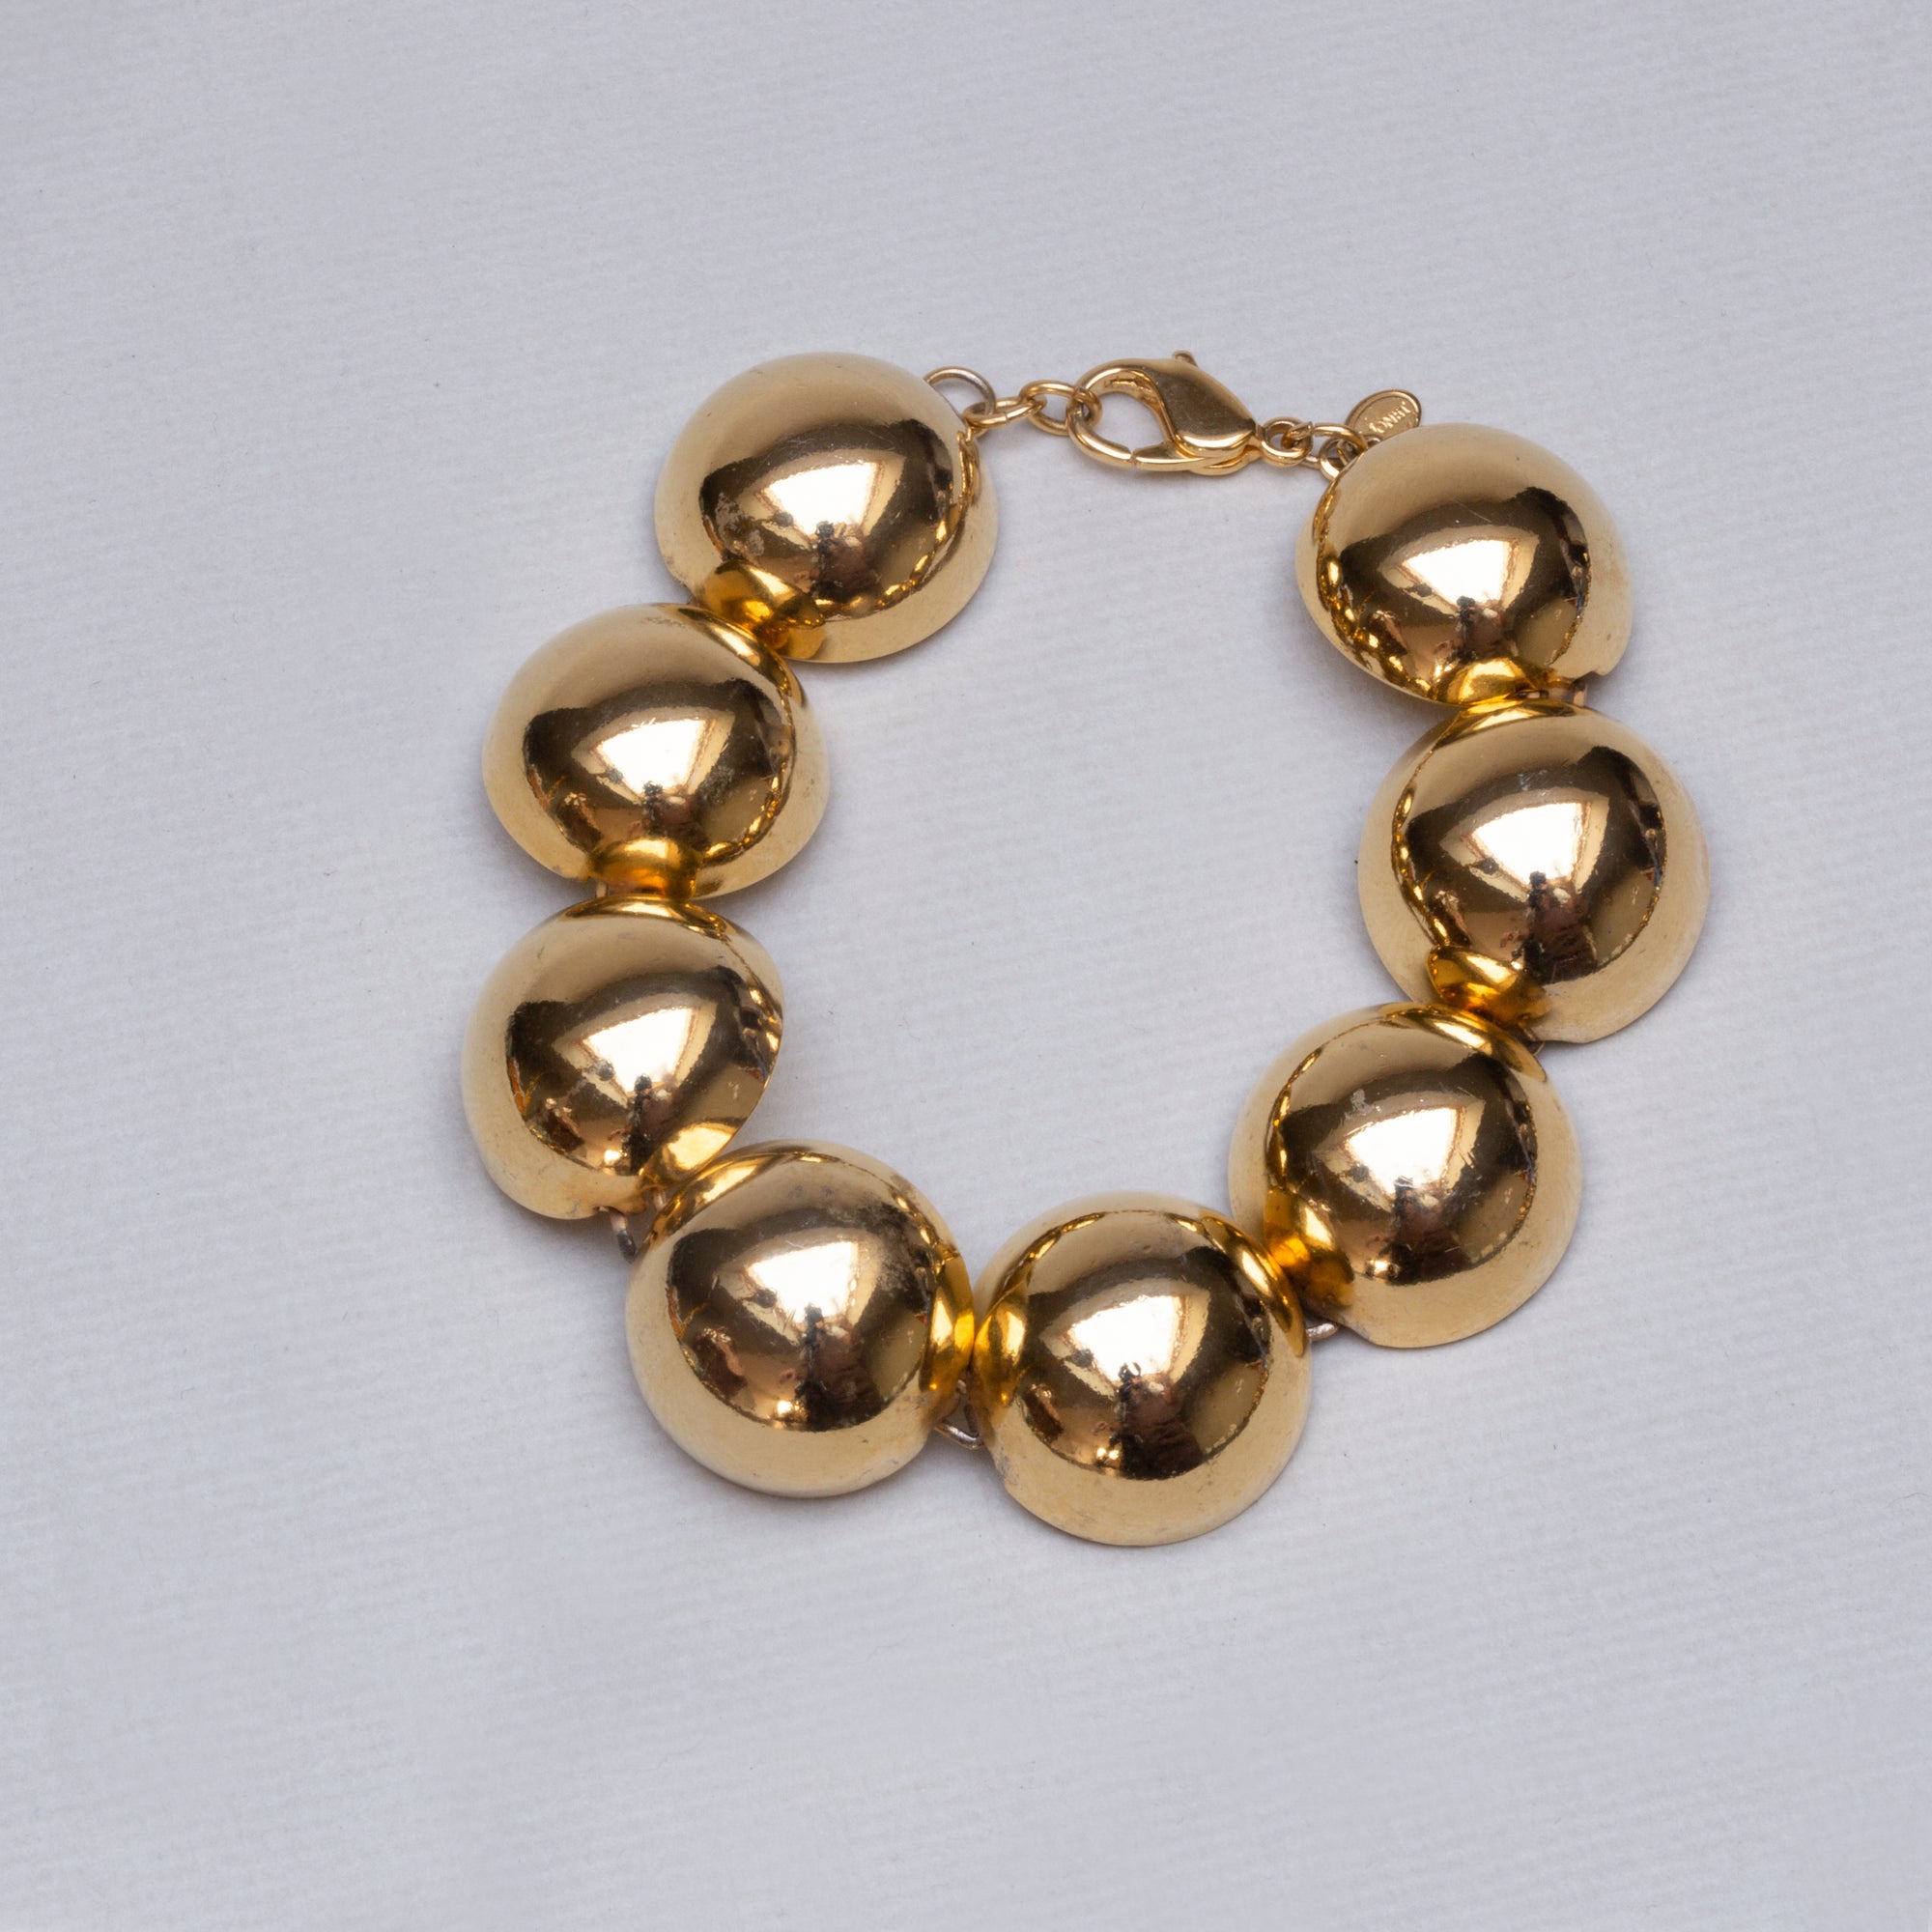 Vintage Gold Bobble Bracelet